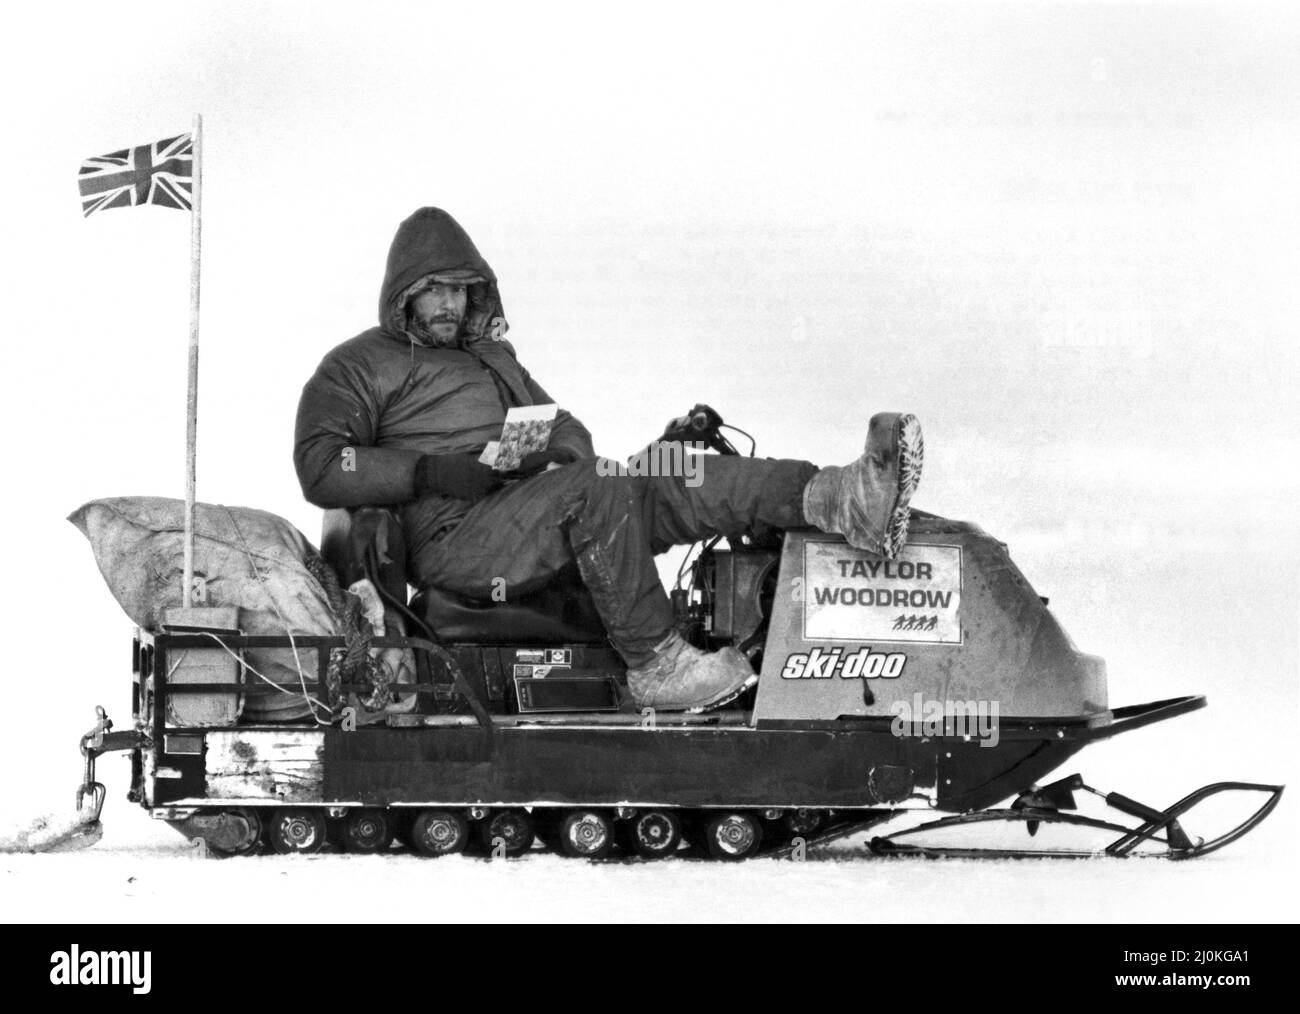 North Pole Heroes: Domenica 11 aprile Sir Ranulph Twisleton-Wykeham-Fiennes e il suo compagno Charles Burton si levarono in piedi sul Polo Nord e godettero di un breve riposo nella loro straordinaria spedizione Transglobo. Sir Ranulph, 38 anni, e Burton, 40 anni, come affrontare circa 500 miglia di trekking pericoloso attraverso la cicecap polare a Spitsbergen, dove si rendezvous con la loro nave, il Benjamin Bowring. Solo allora i due esploratori avranno il tempo di rilassarsi e guardare indietro sul loro meraviglioso viaggio. "Dai a tutti i nostri saluti" ha detto Burton allo scrittore Mirror Michael McCarthy e al fotografo Brendan Mon Foto Stock